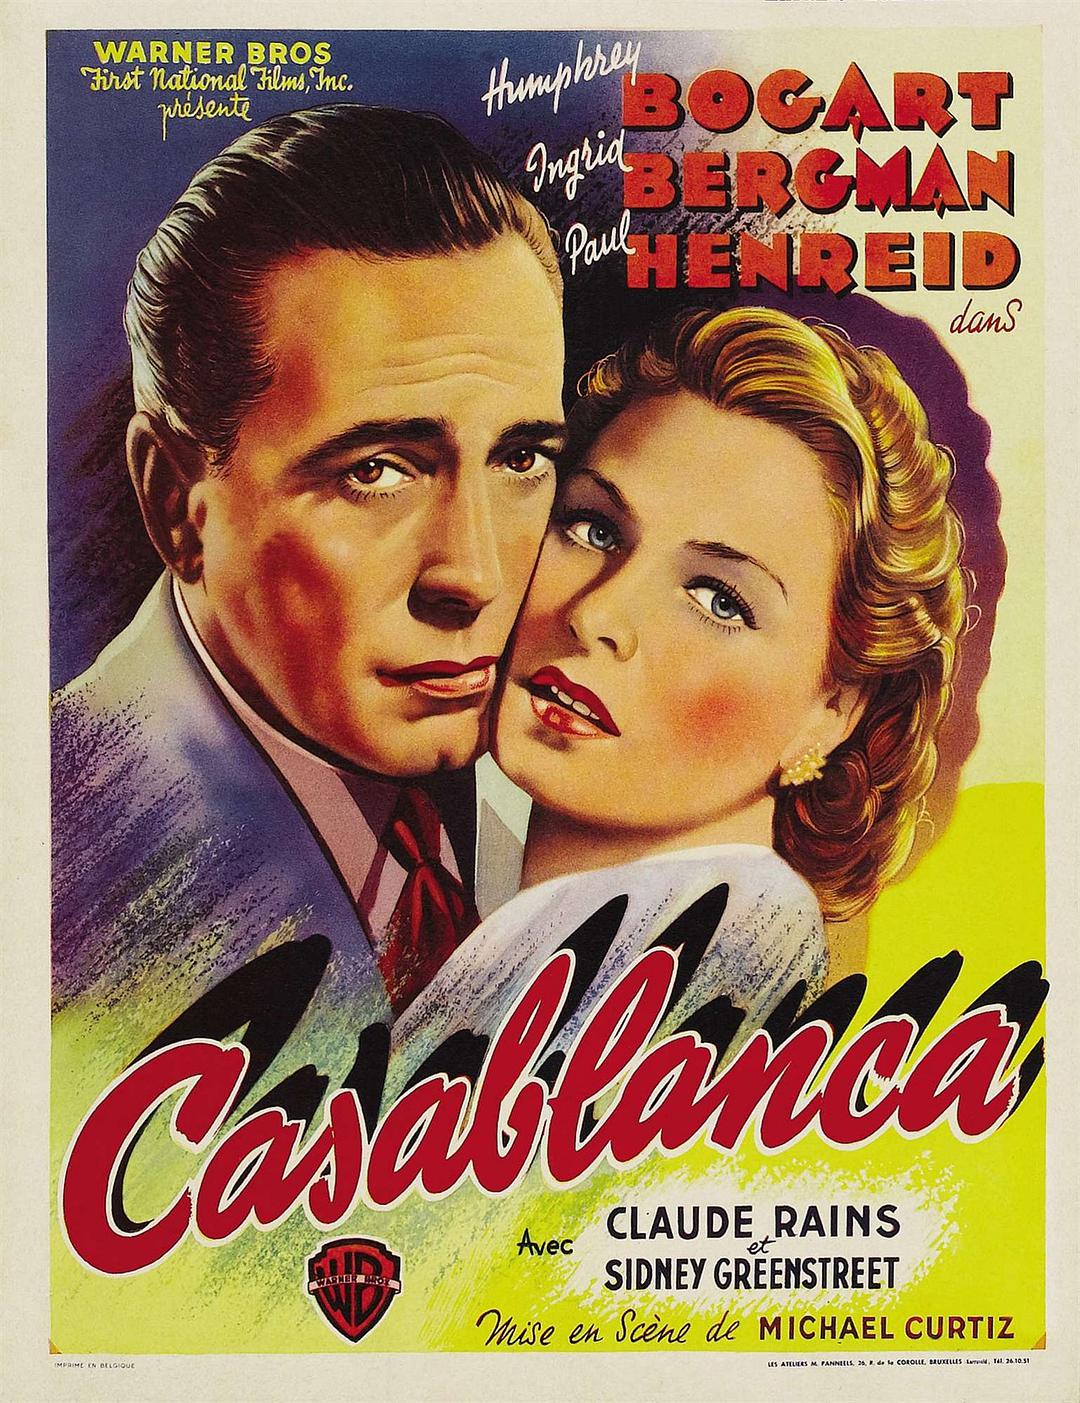 卡萨布兰卡 Casablanca.1942.REMASTERED.1080p.BluRay.REMUX.AVC.DTS-HD.MA.1.0-FGT 20.38GB